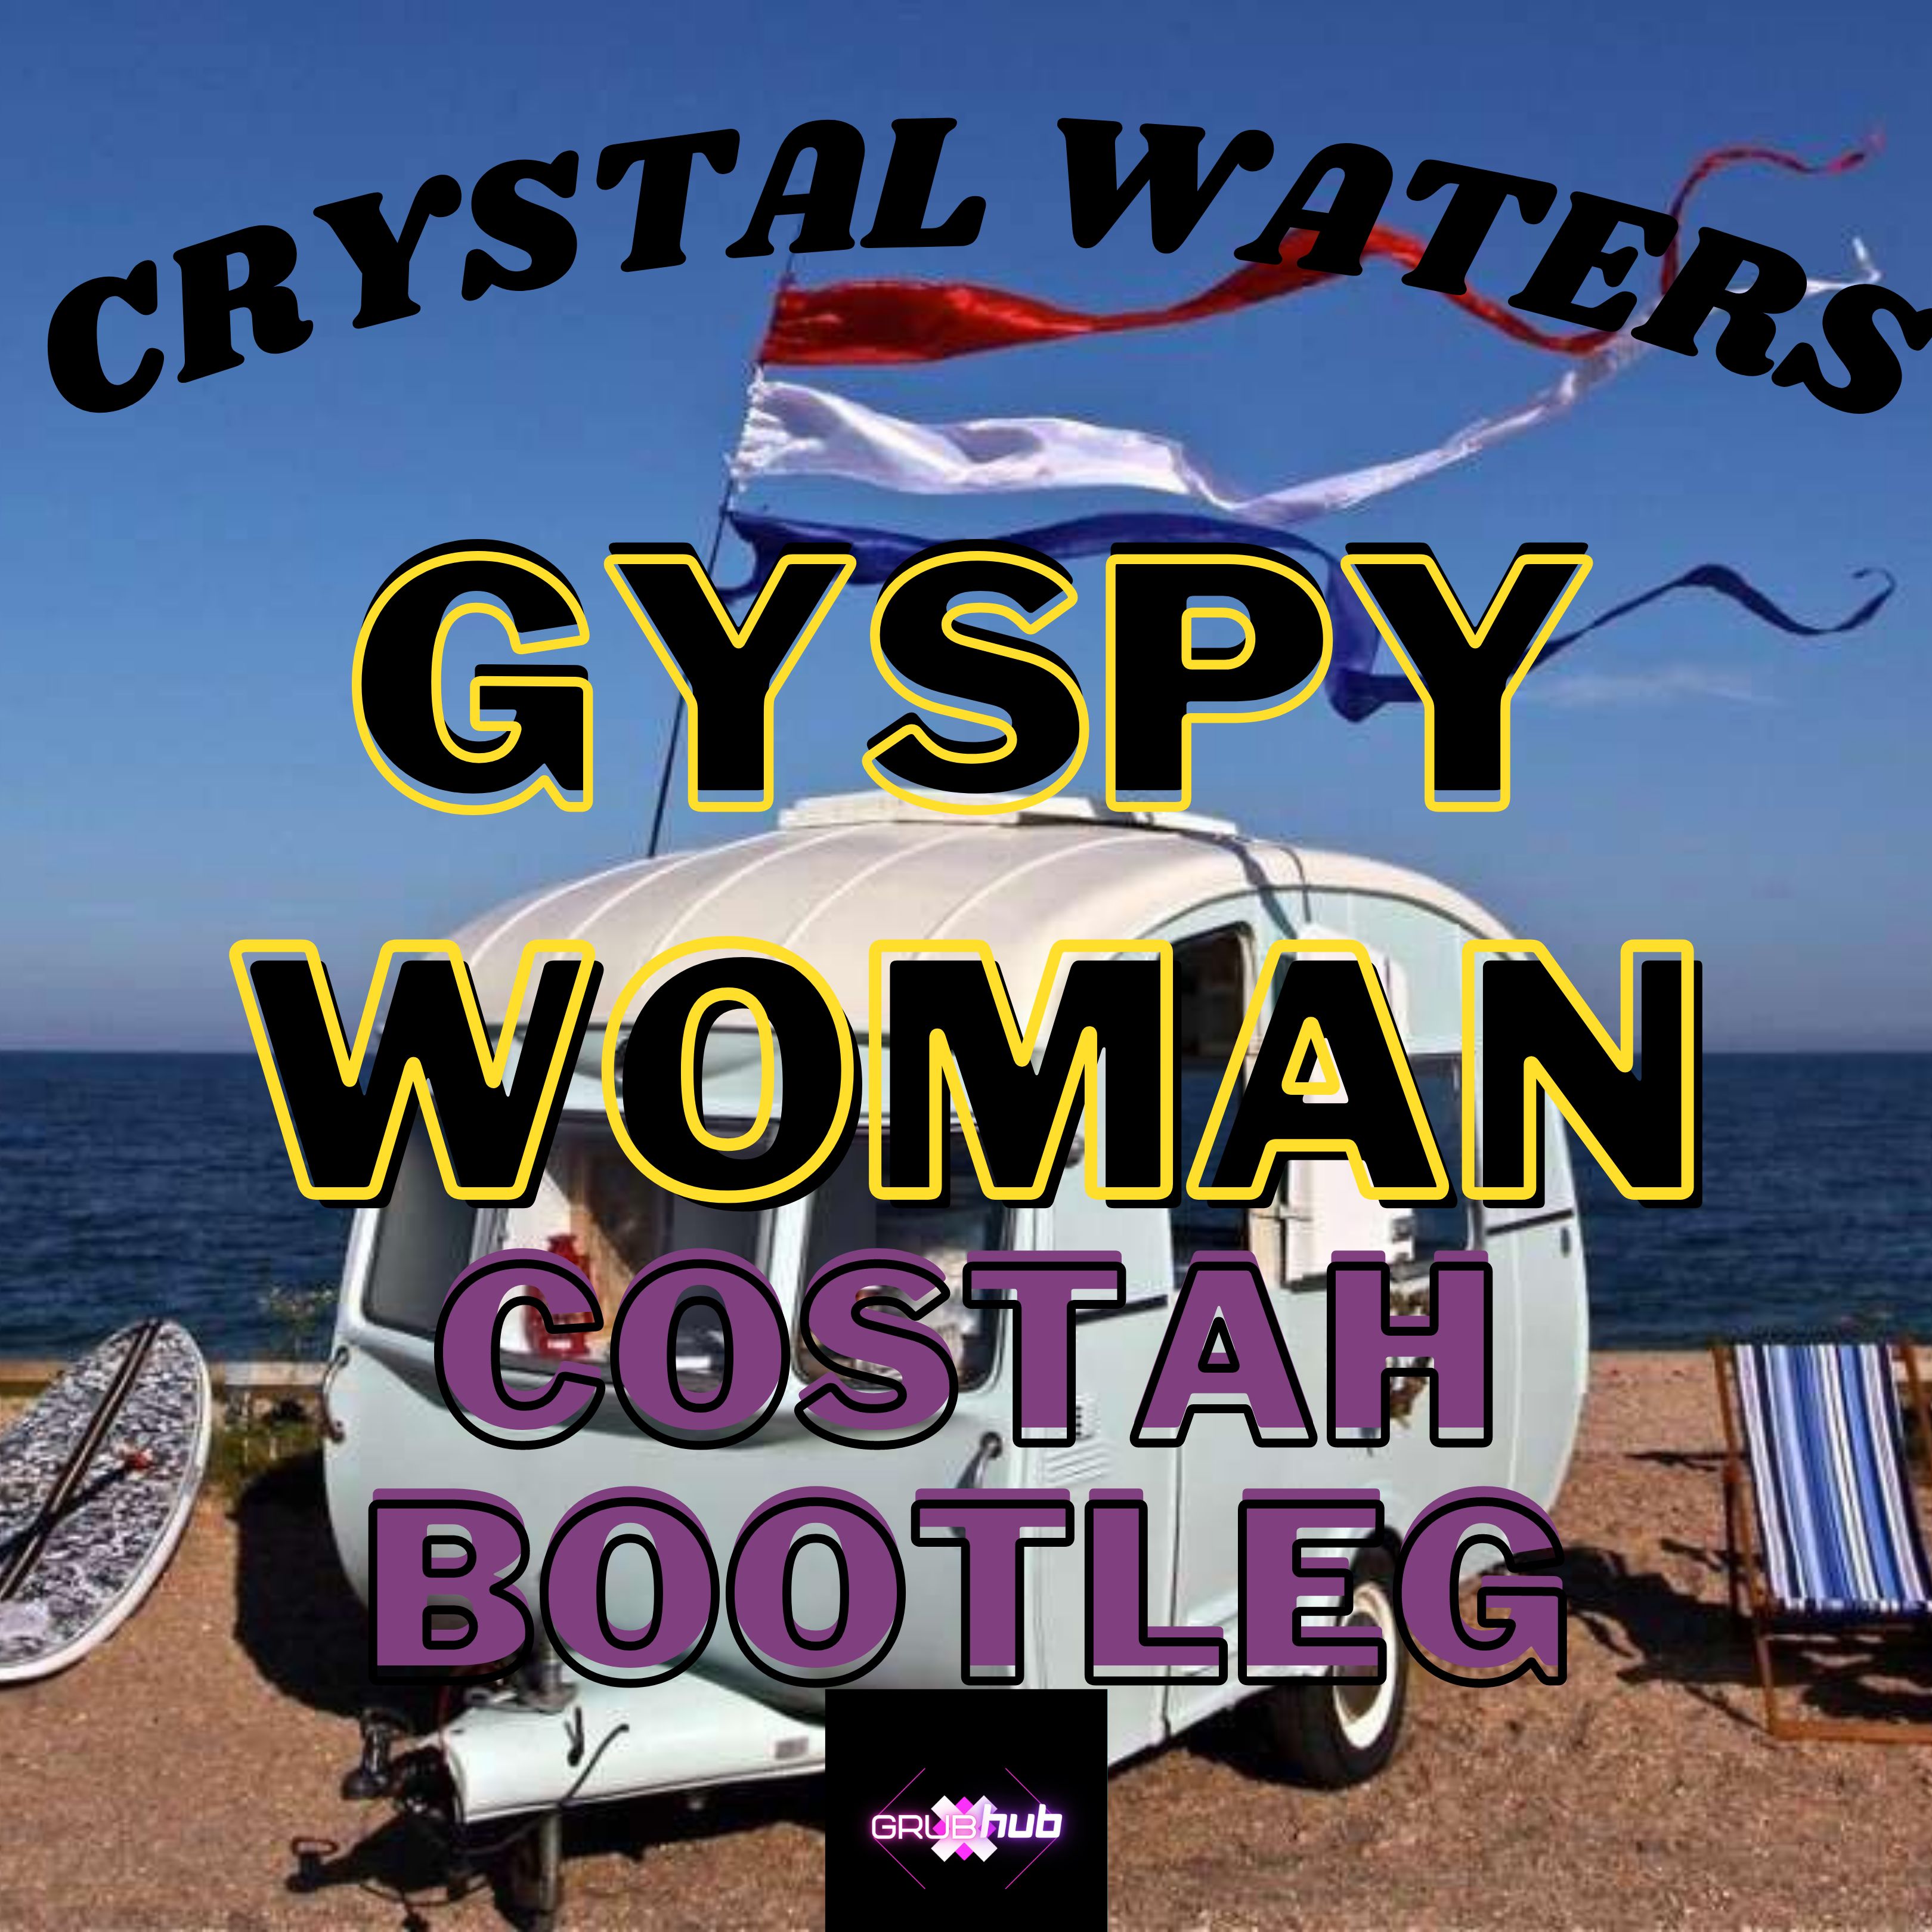 Skinuti Crystal Waters - Gypsy Woman (Costah Bootleg) FREE DOWNLOAD